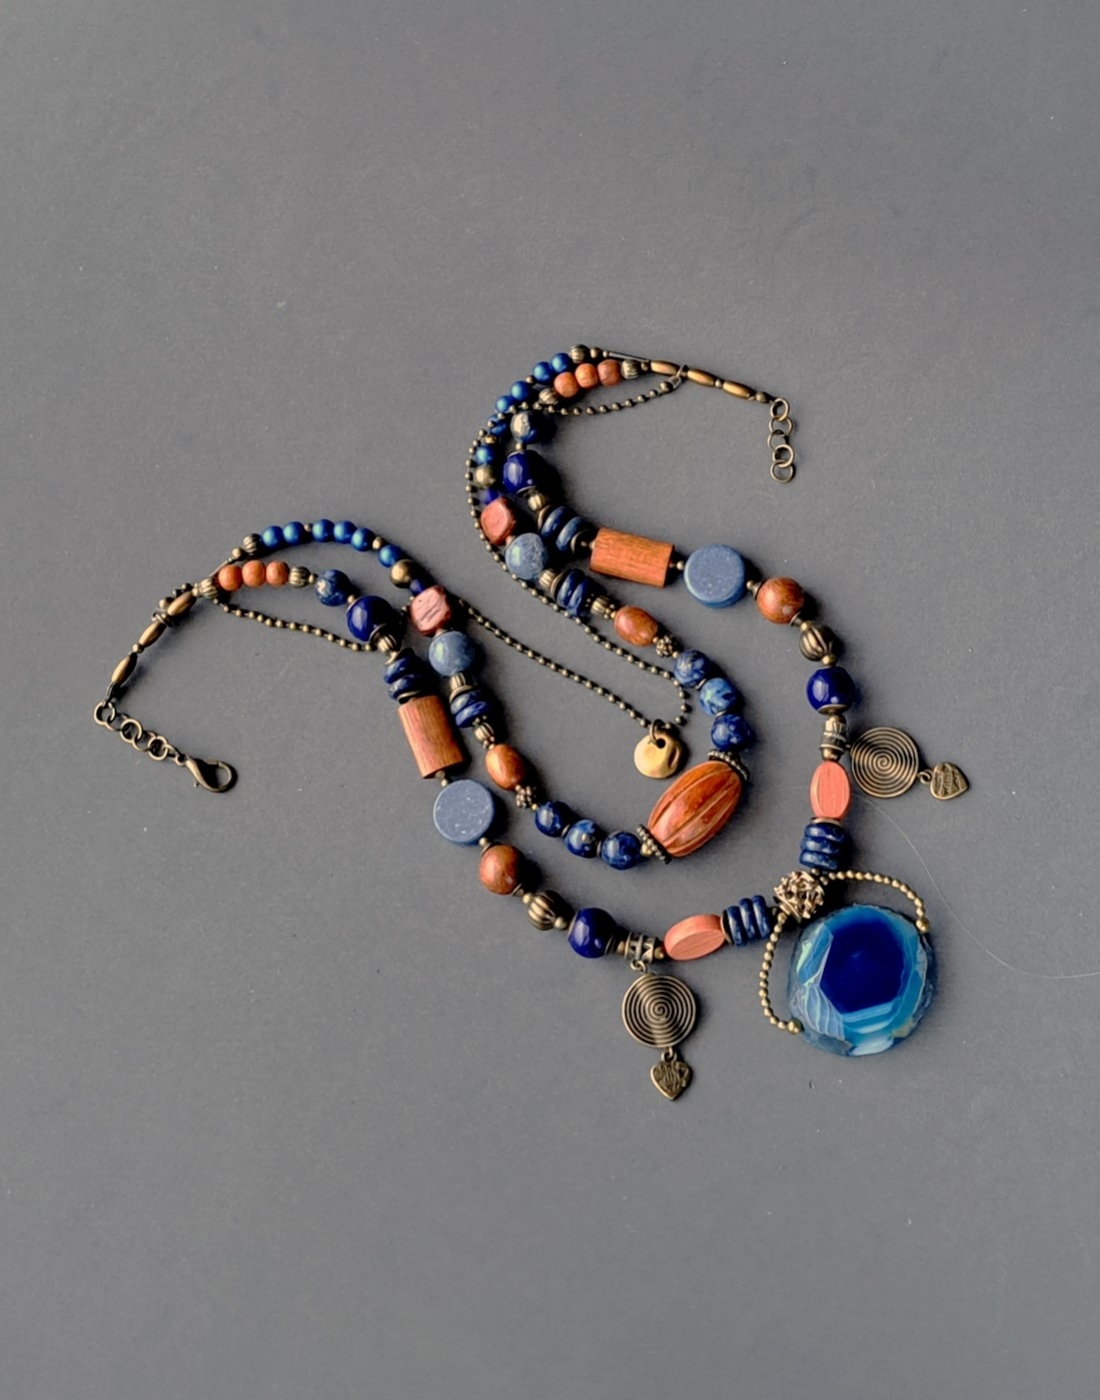 wyjątkowa i unikalna kompozycja masywnego, trzyżyłowego okazałego naszyjnika w duchu biżuterii etnicznej inspirowanego cudną biżuterią afrykańską